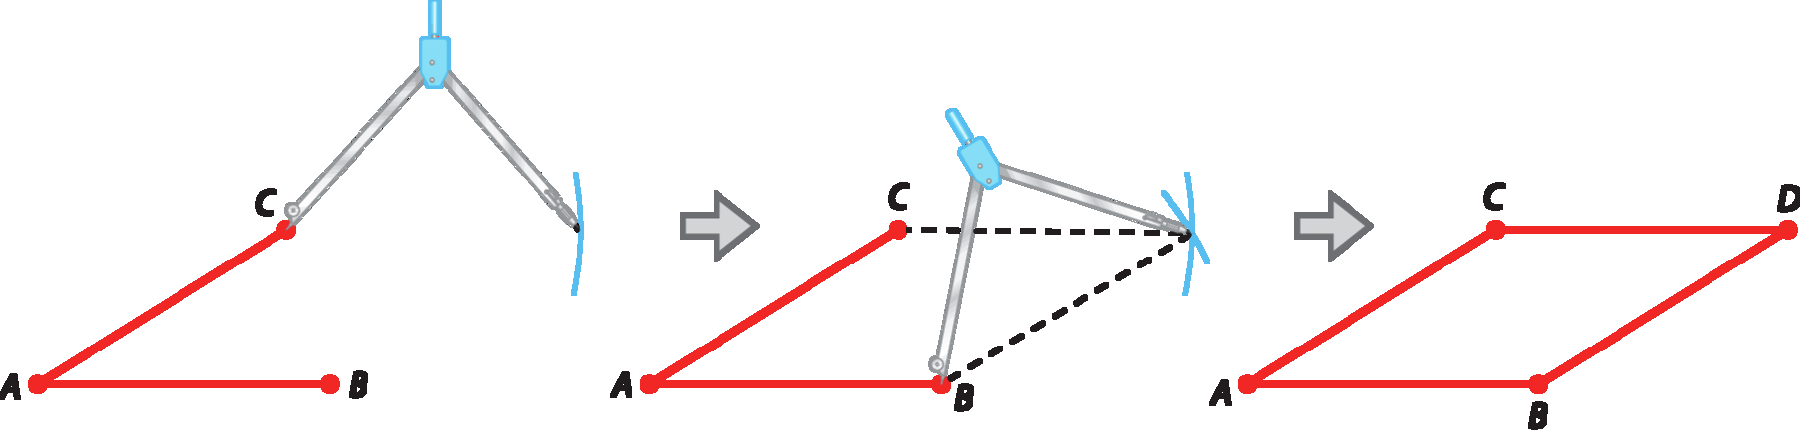 Ilustração. Segmento AB e segmento AC na diagonal unidos em A. Compasso aberto em C, e ponta com grafite traça outro arco à direita. Seta para direita. Segmento AB e segmento AC na diagonal unidos em A. Compasso aberto em B traça outro arco à direita, formando um x.  Compasso aberto com a ponta seca do compasso em B, e a ponta do com grafite traça um arco à direita, formando um x. Com o segmento AB e o segmento AC, há uma pontilhada formando um paralelogramo. Seta para direita. Paralelogramo ABCD.